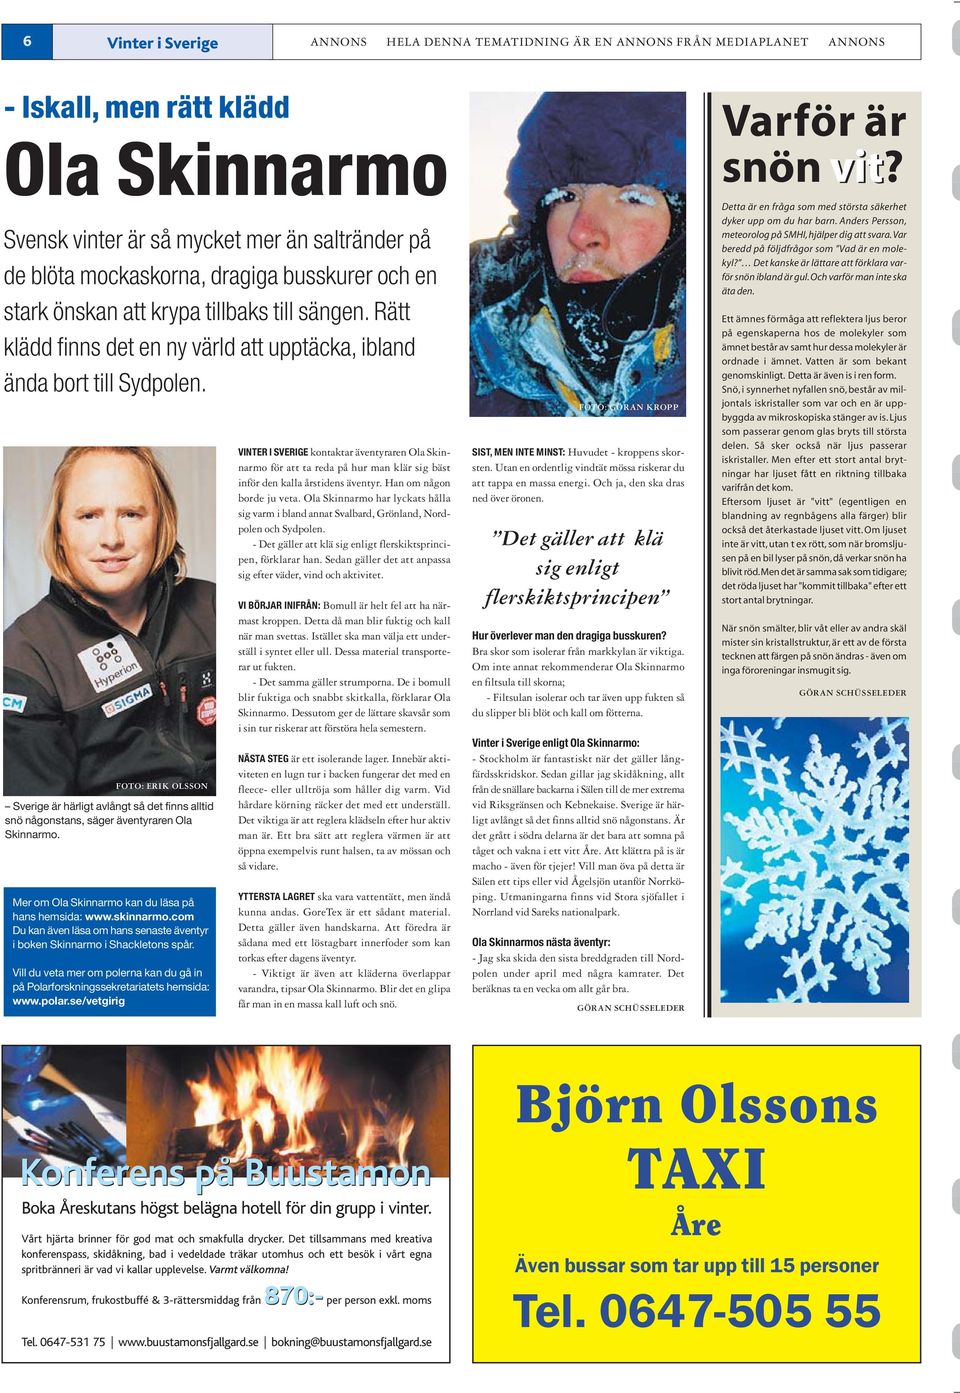 FOTO: ERIK OLSSON Sverige är härligt avlångt så det finns alltid snö någonstans, säger äventyraren Ola Skinnarmo. Mer om Ola Skinnarmo kan du läsa på hans hemsida: www.skinnarmo.